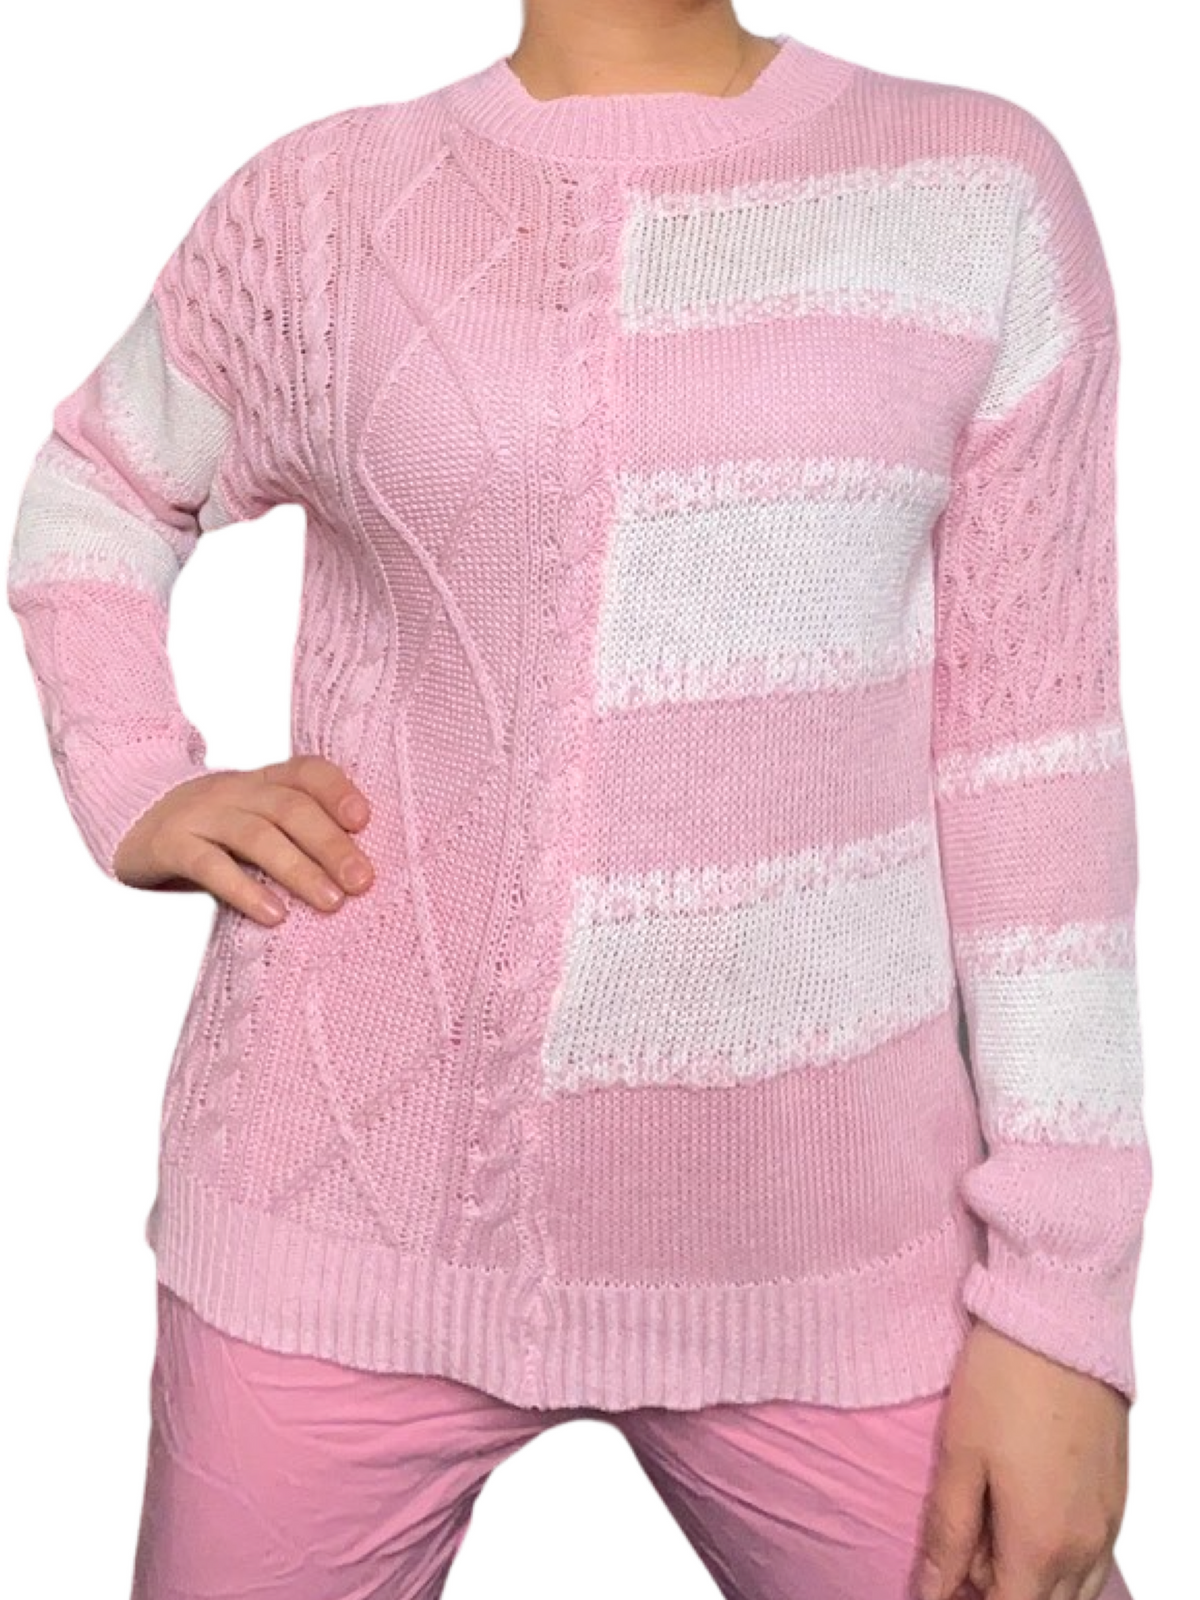 Chandail pour femme en tricot rose à manche longue avec camisole gainante à l'intérieur.